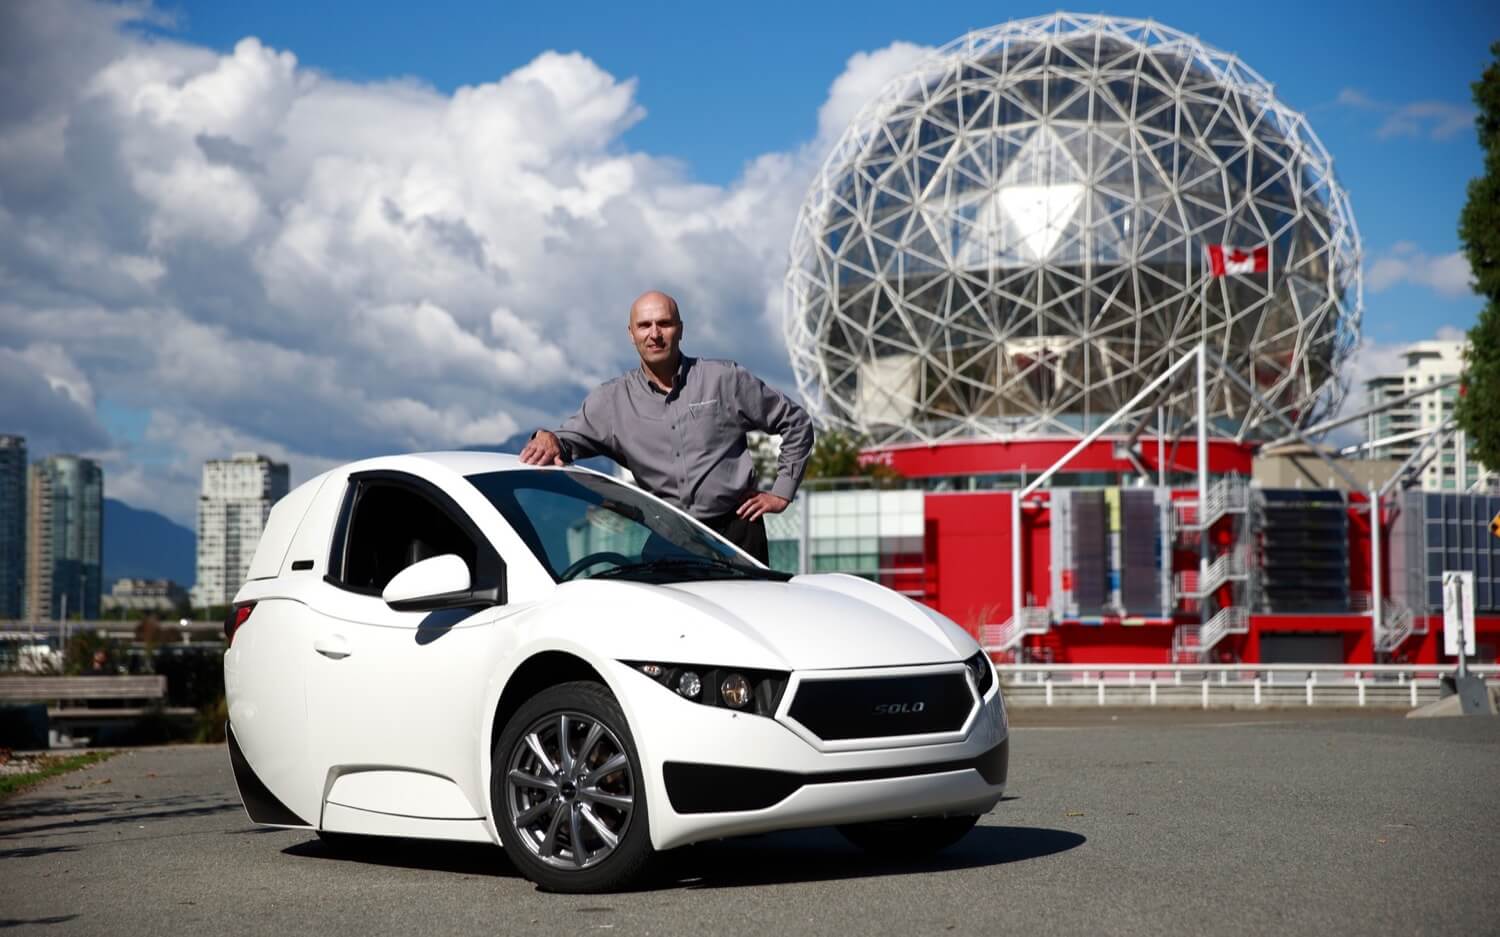 तीन-पहिएदार इलेक्ट्रिक कार से कनाडा चौंकाने वाली उनकी पहली मालिकों